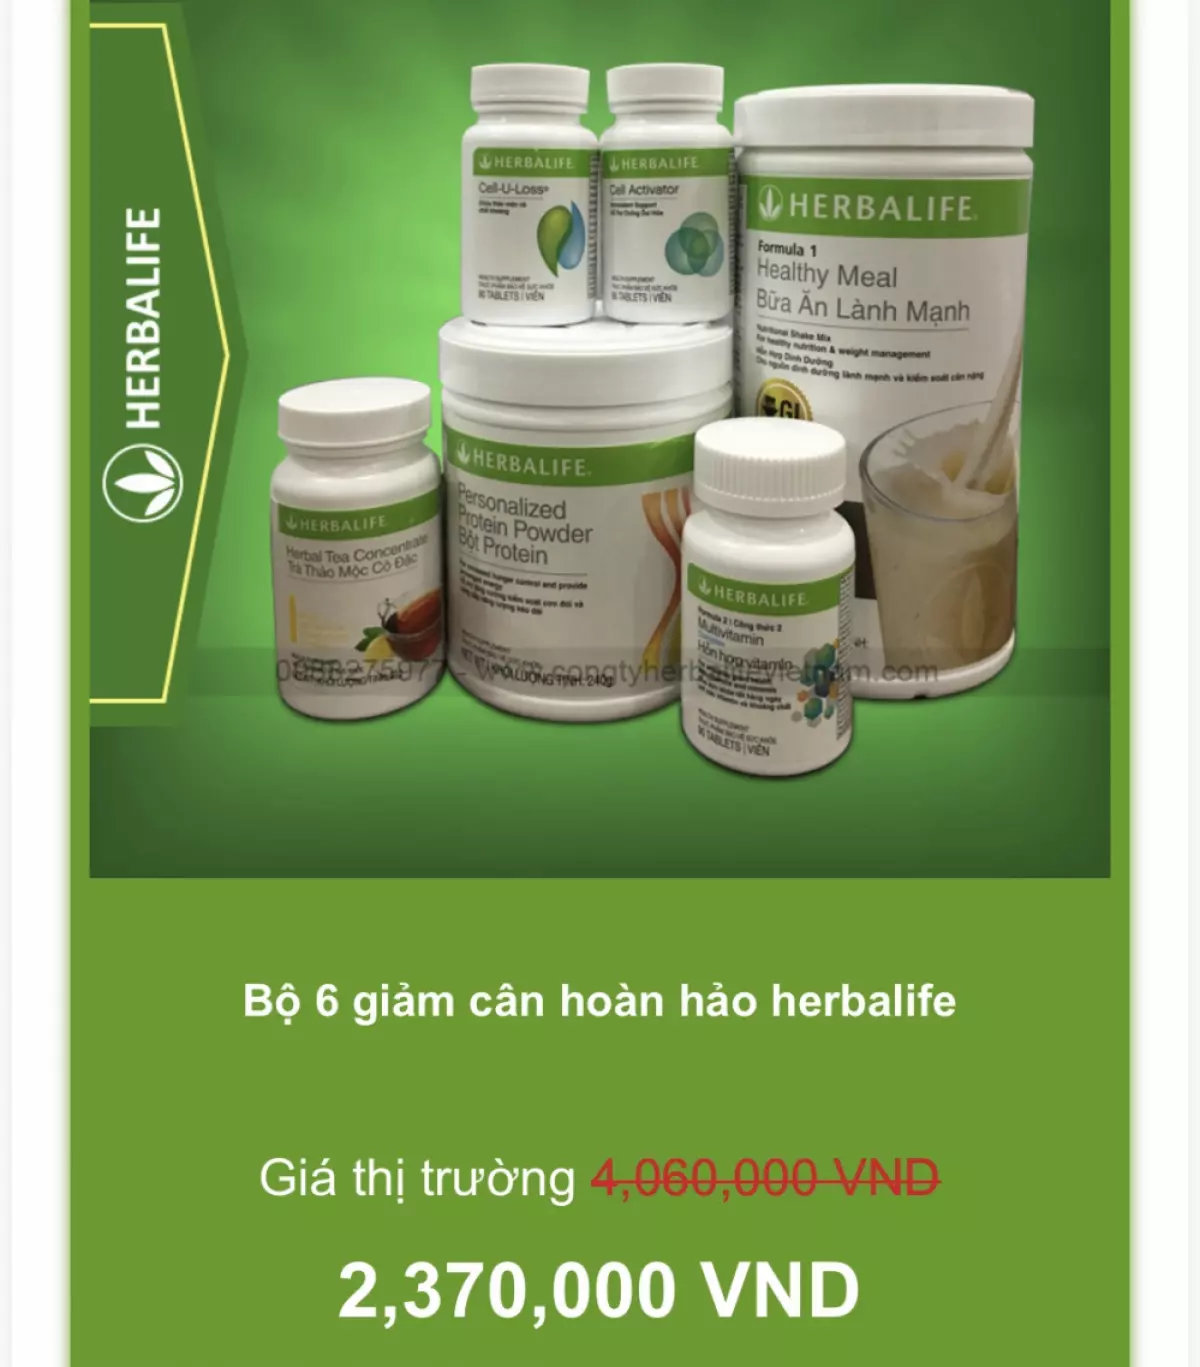 Herbalife Nutrition: Người Việt quan tâm đến bữa sáng giàu protein |  Vietnam+ (VietnamPlus)